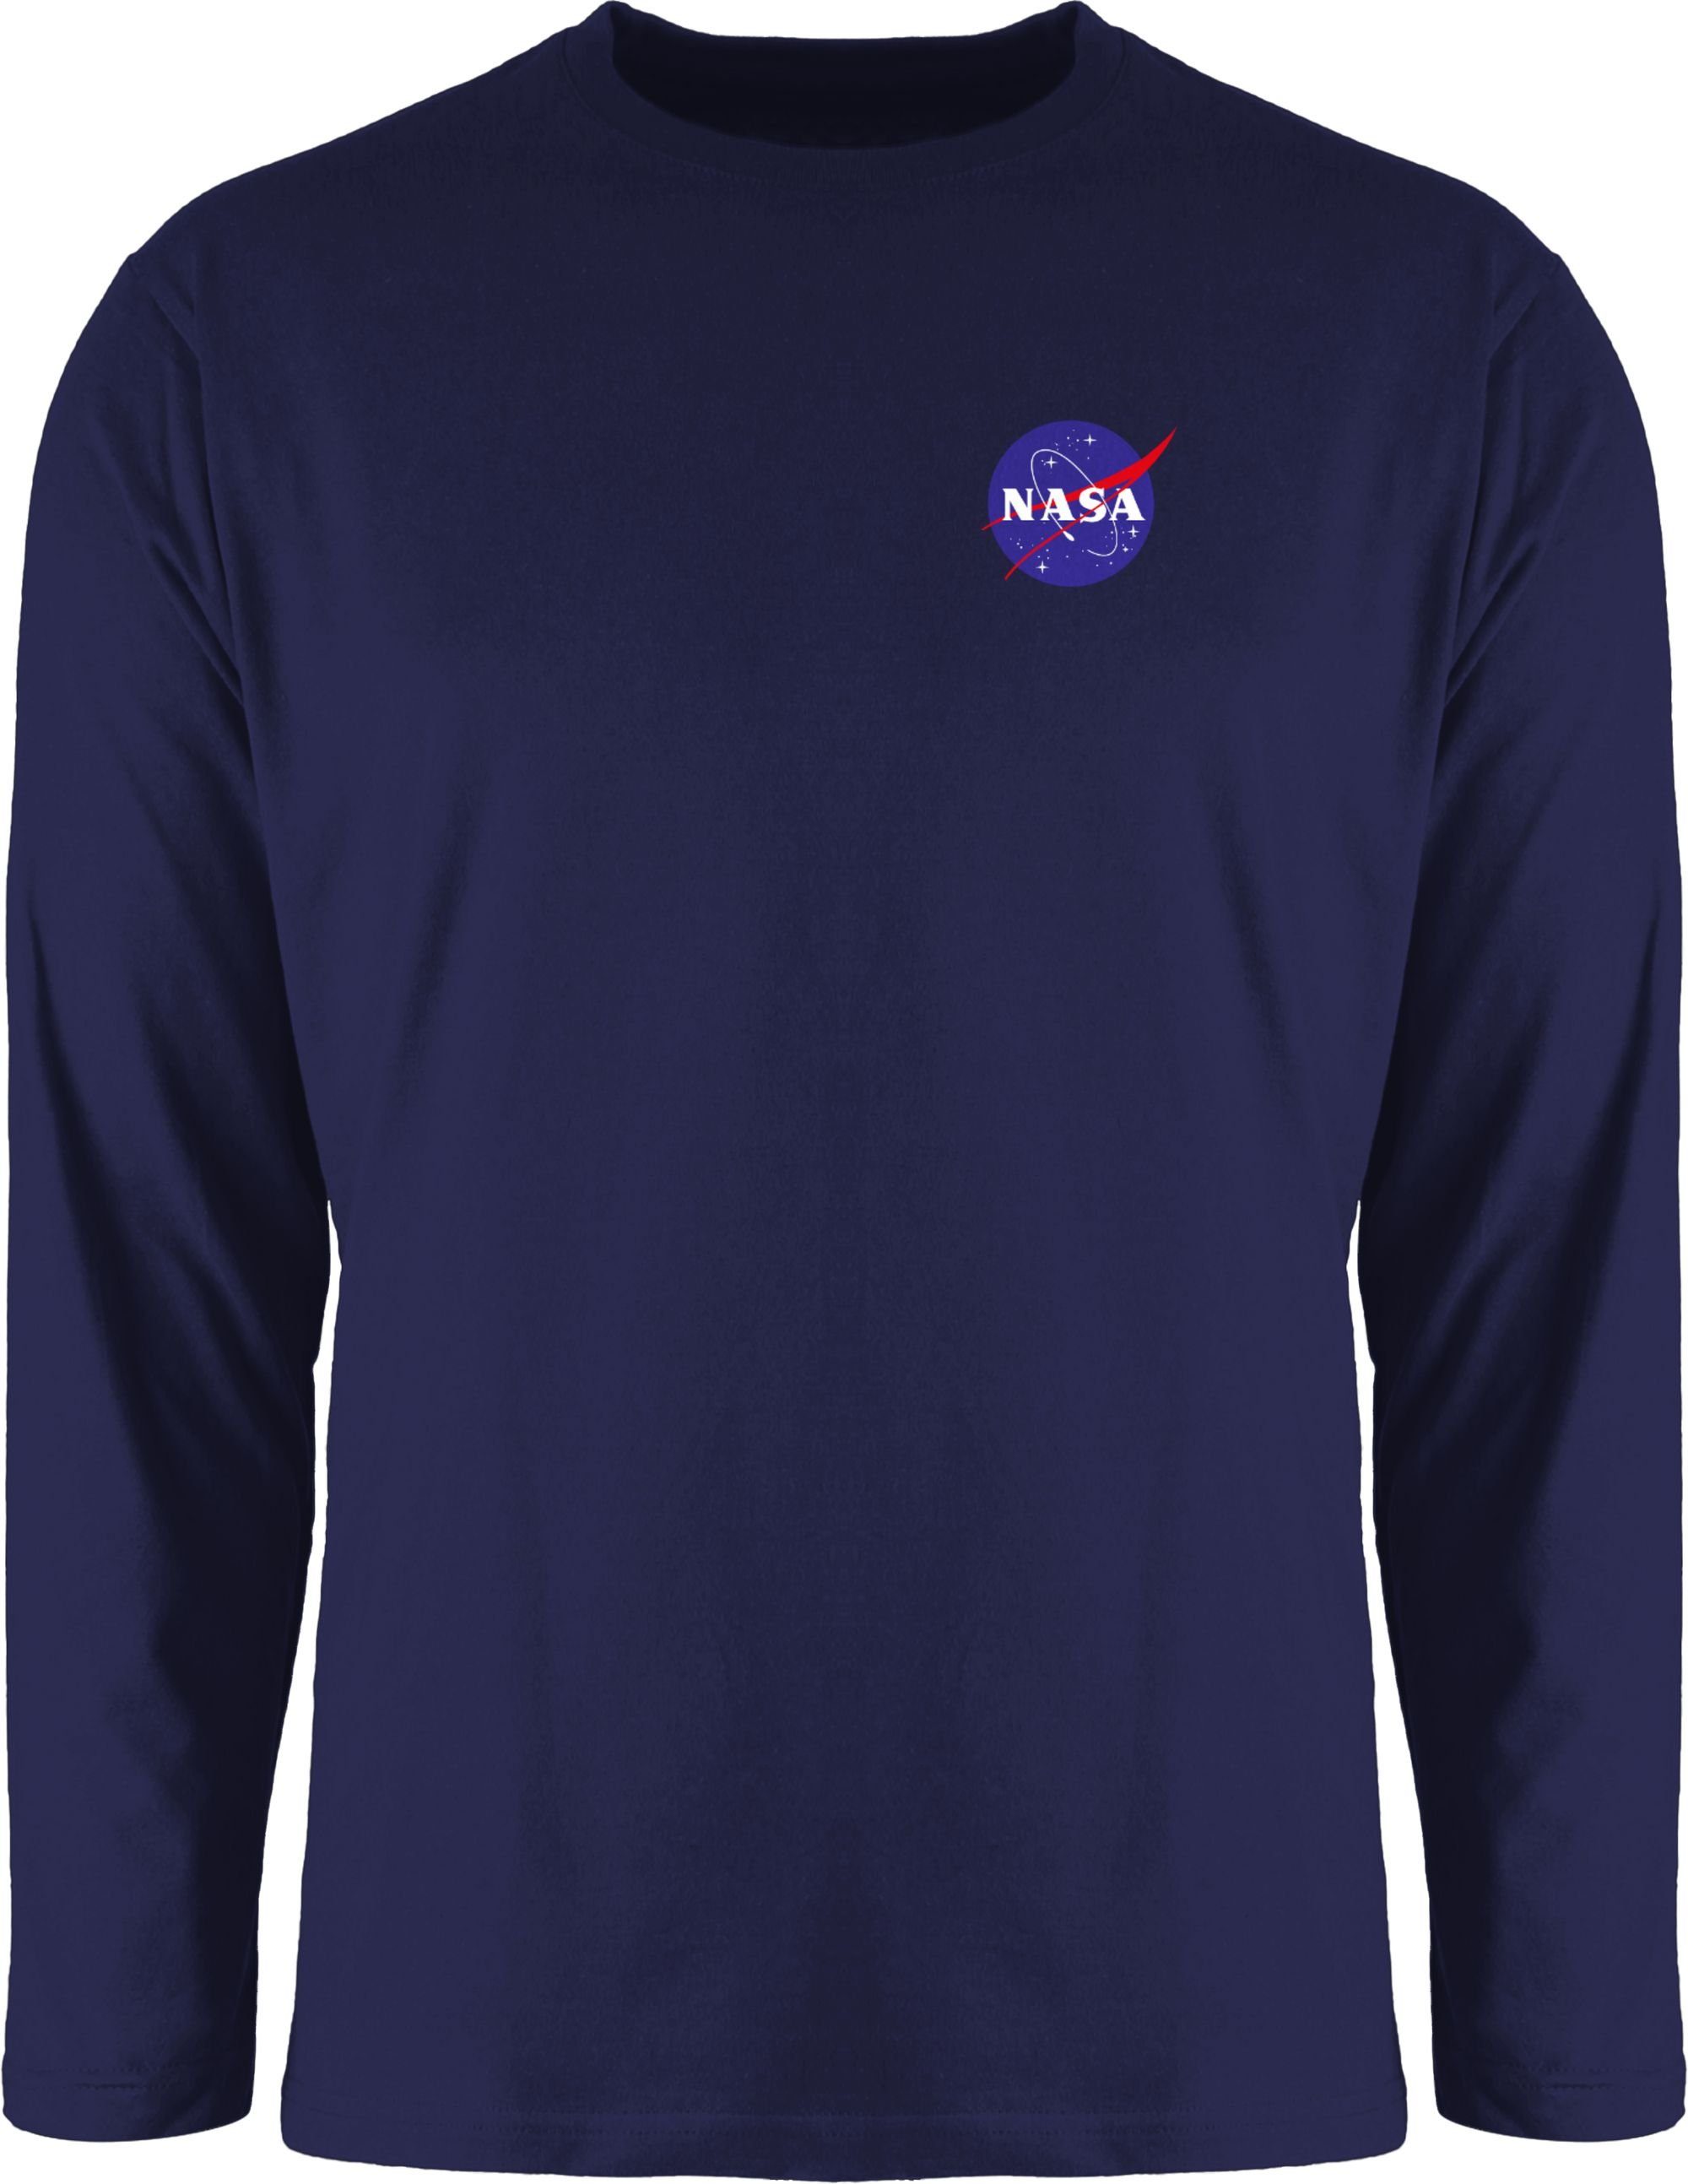 Shirtracer Rundhalsshirt NASA Logo Space X Merchandise Weltraum Weltall Weltraum 1 Navy Blau